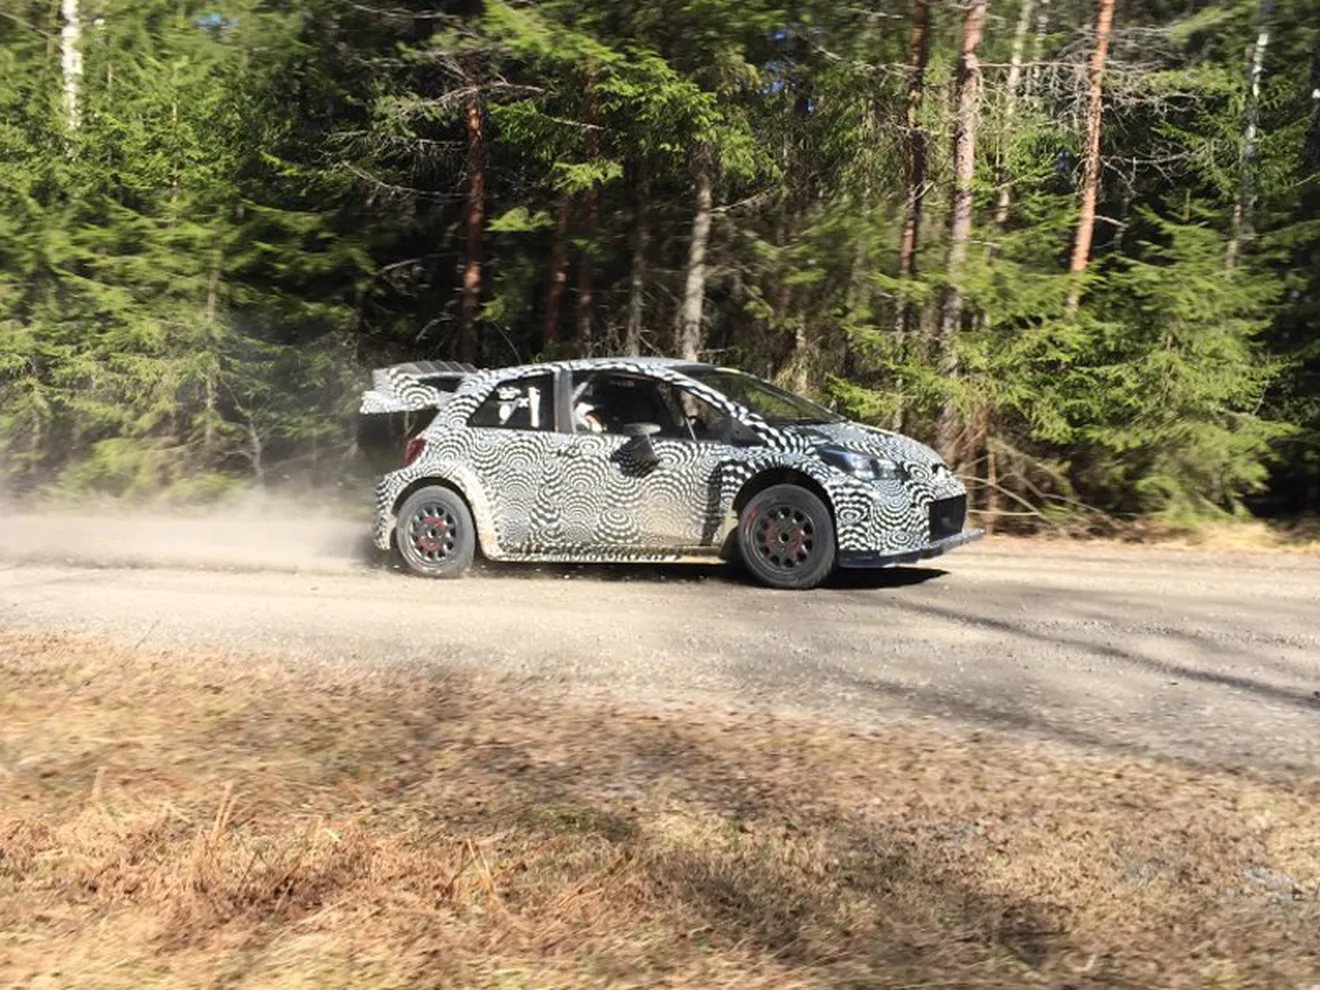 Primeras fotos y vídeos del Toyota Yaris WRC 2017